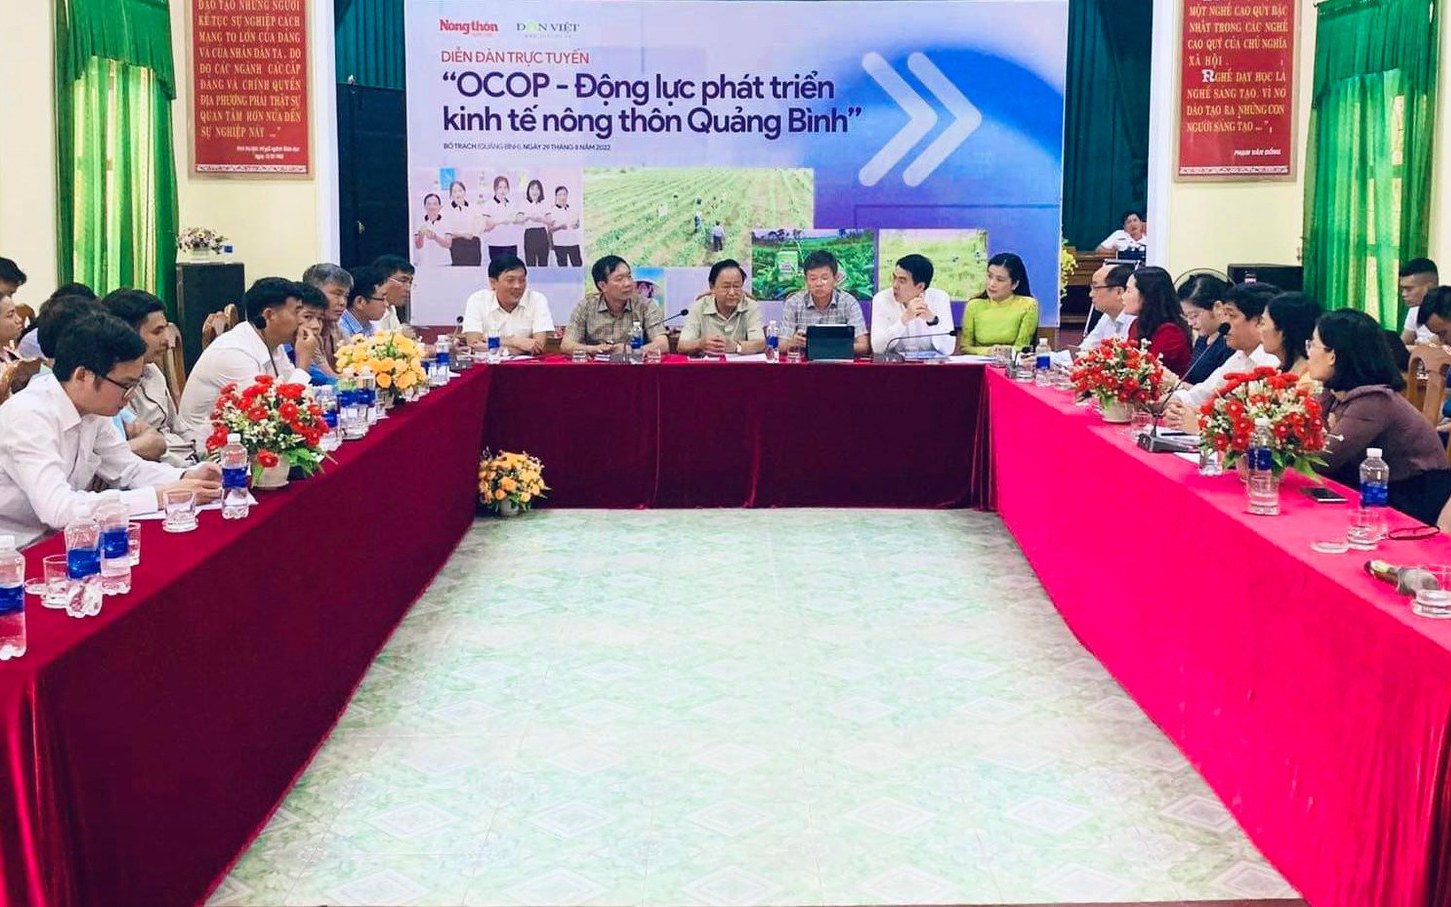 OCOP - Động lực phát triển kinh tế nông thôn tỉnh Quảng Bình